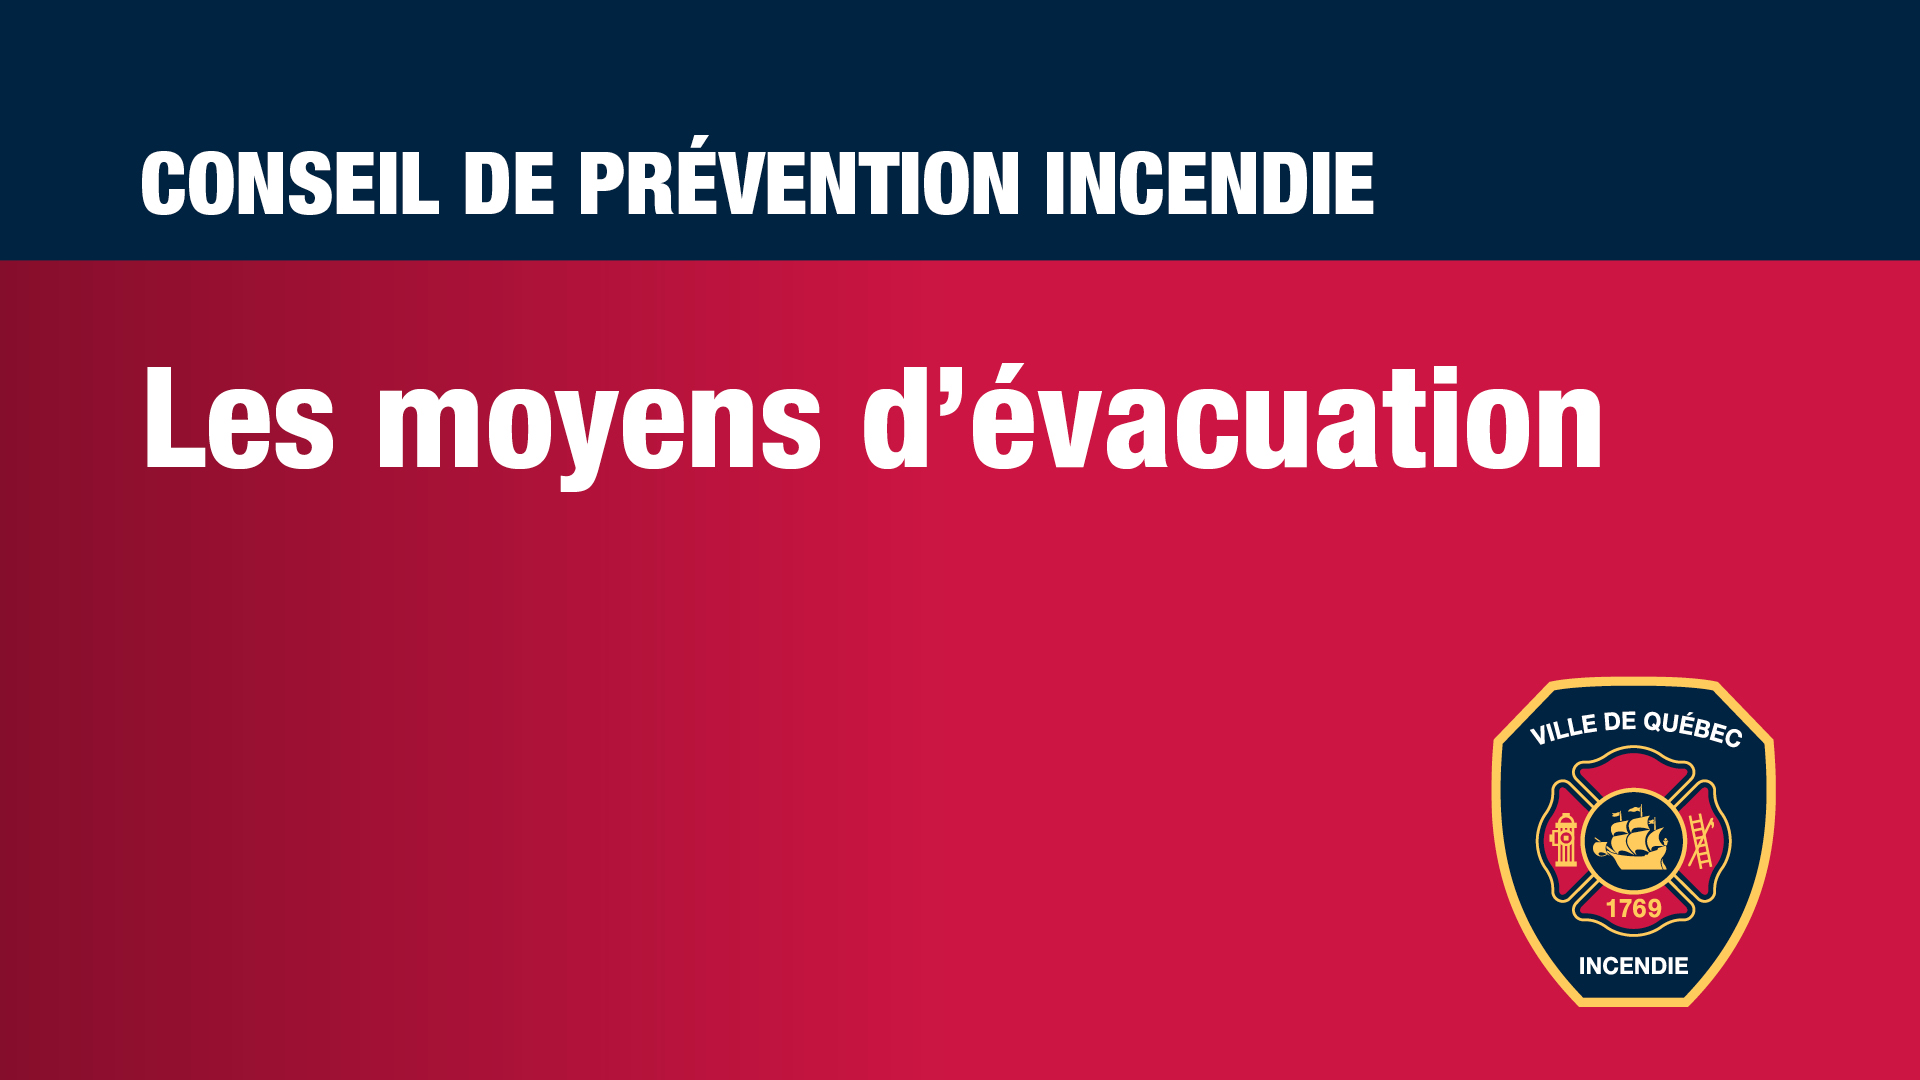 Conseils de prévention - Les moyens d'évacuation.